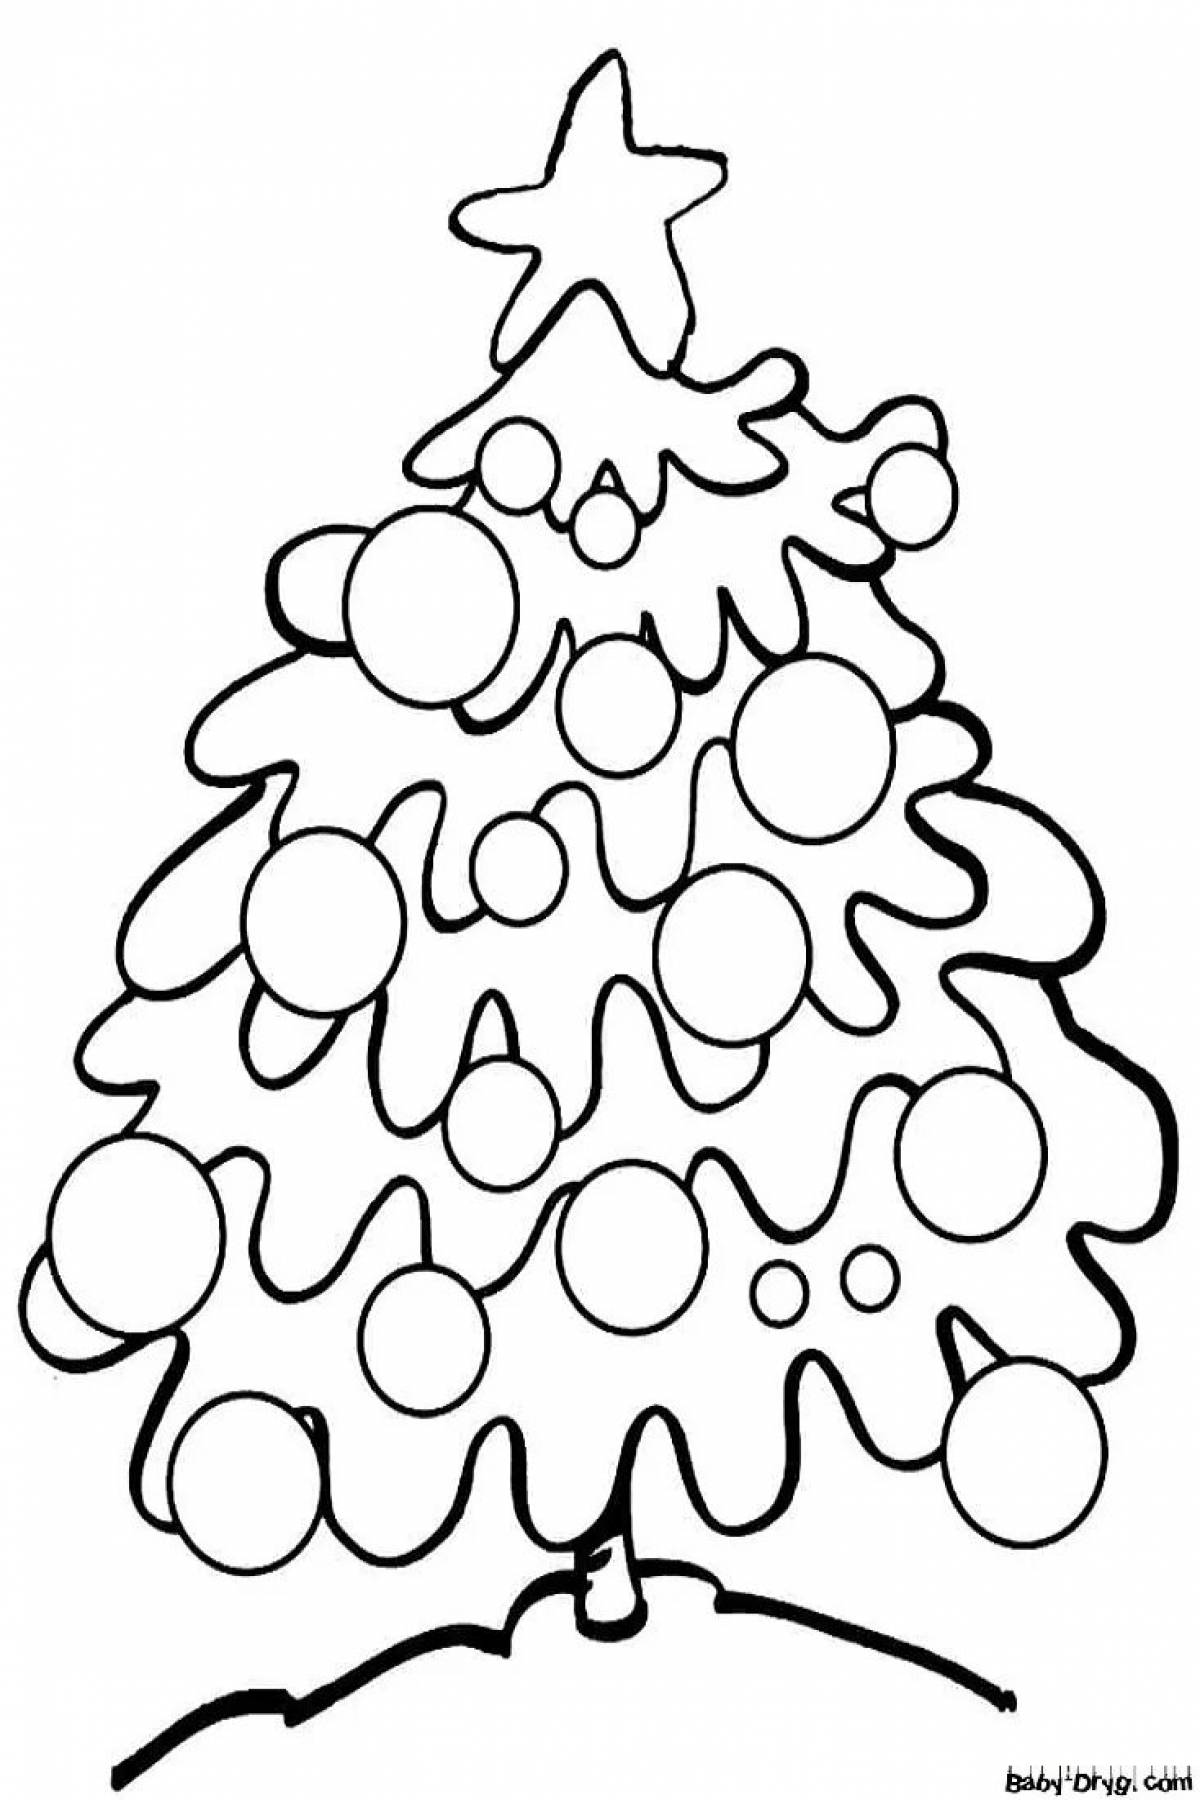 Цветная раскраска рождественской елки для малышей